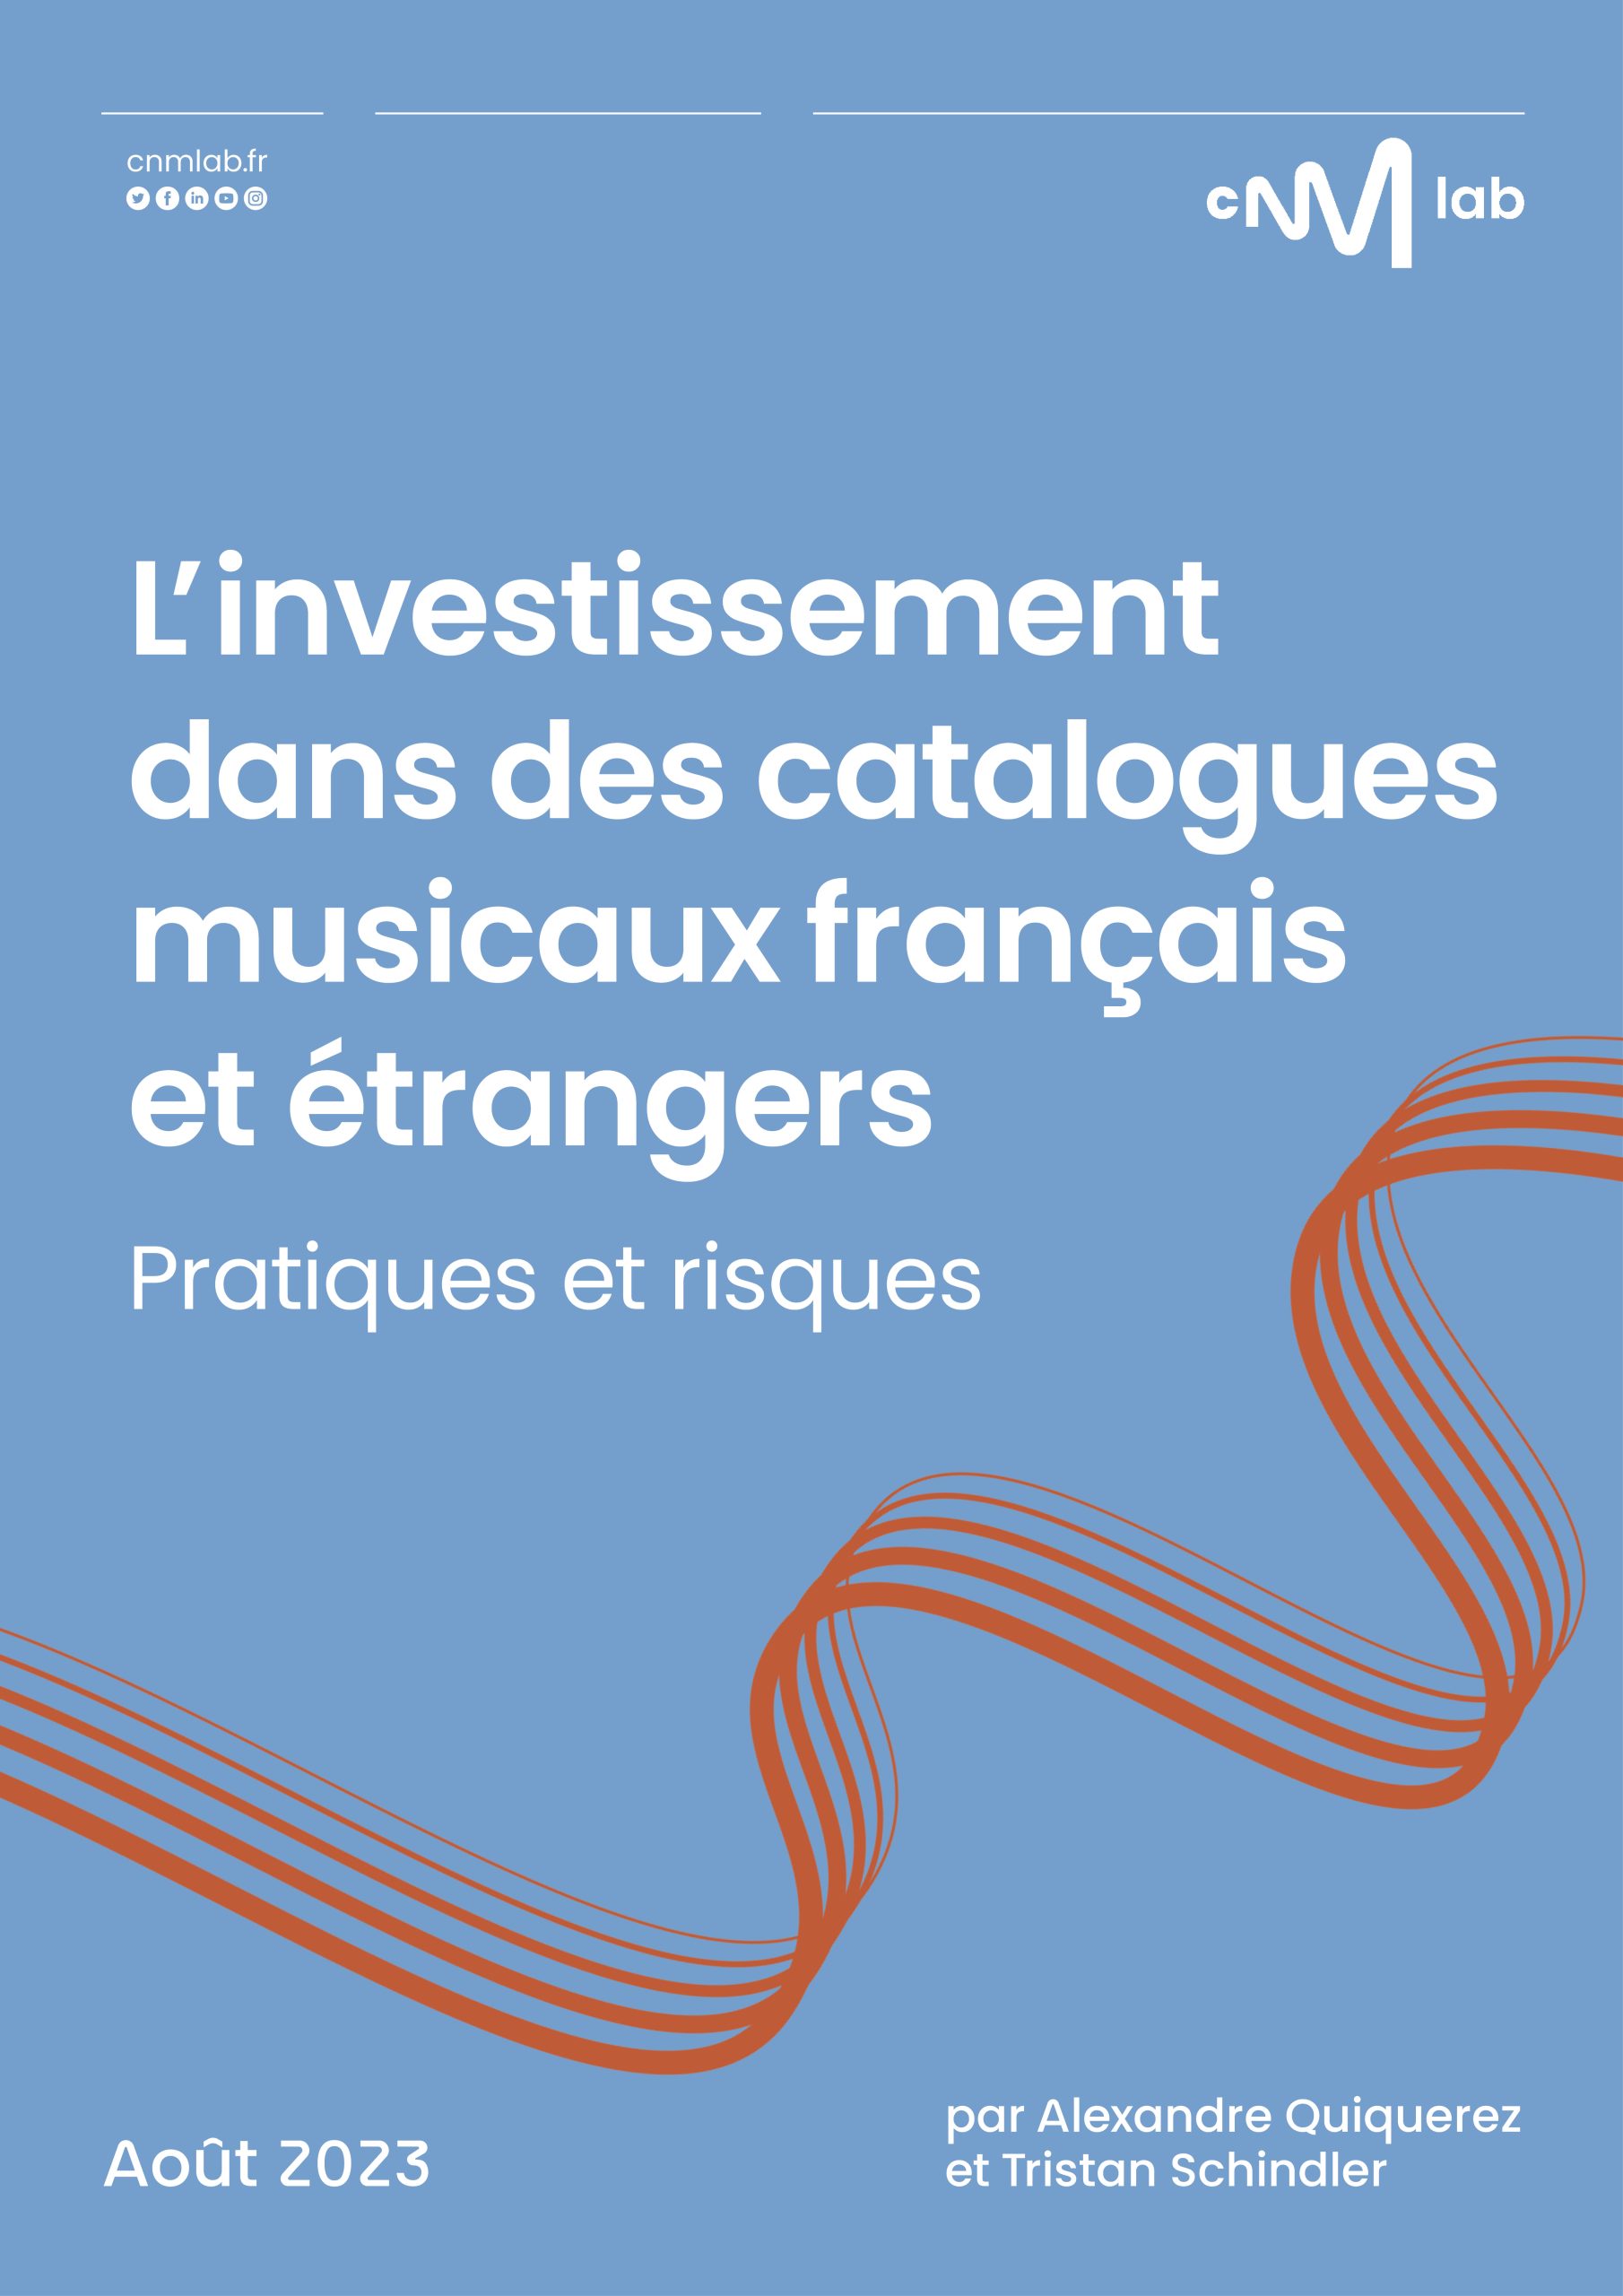 Trésors de la chanson française : CD album en Compilation variété française  : tous les disques à la Fnac